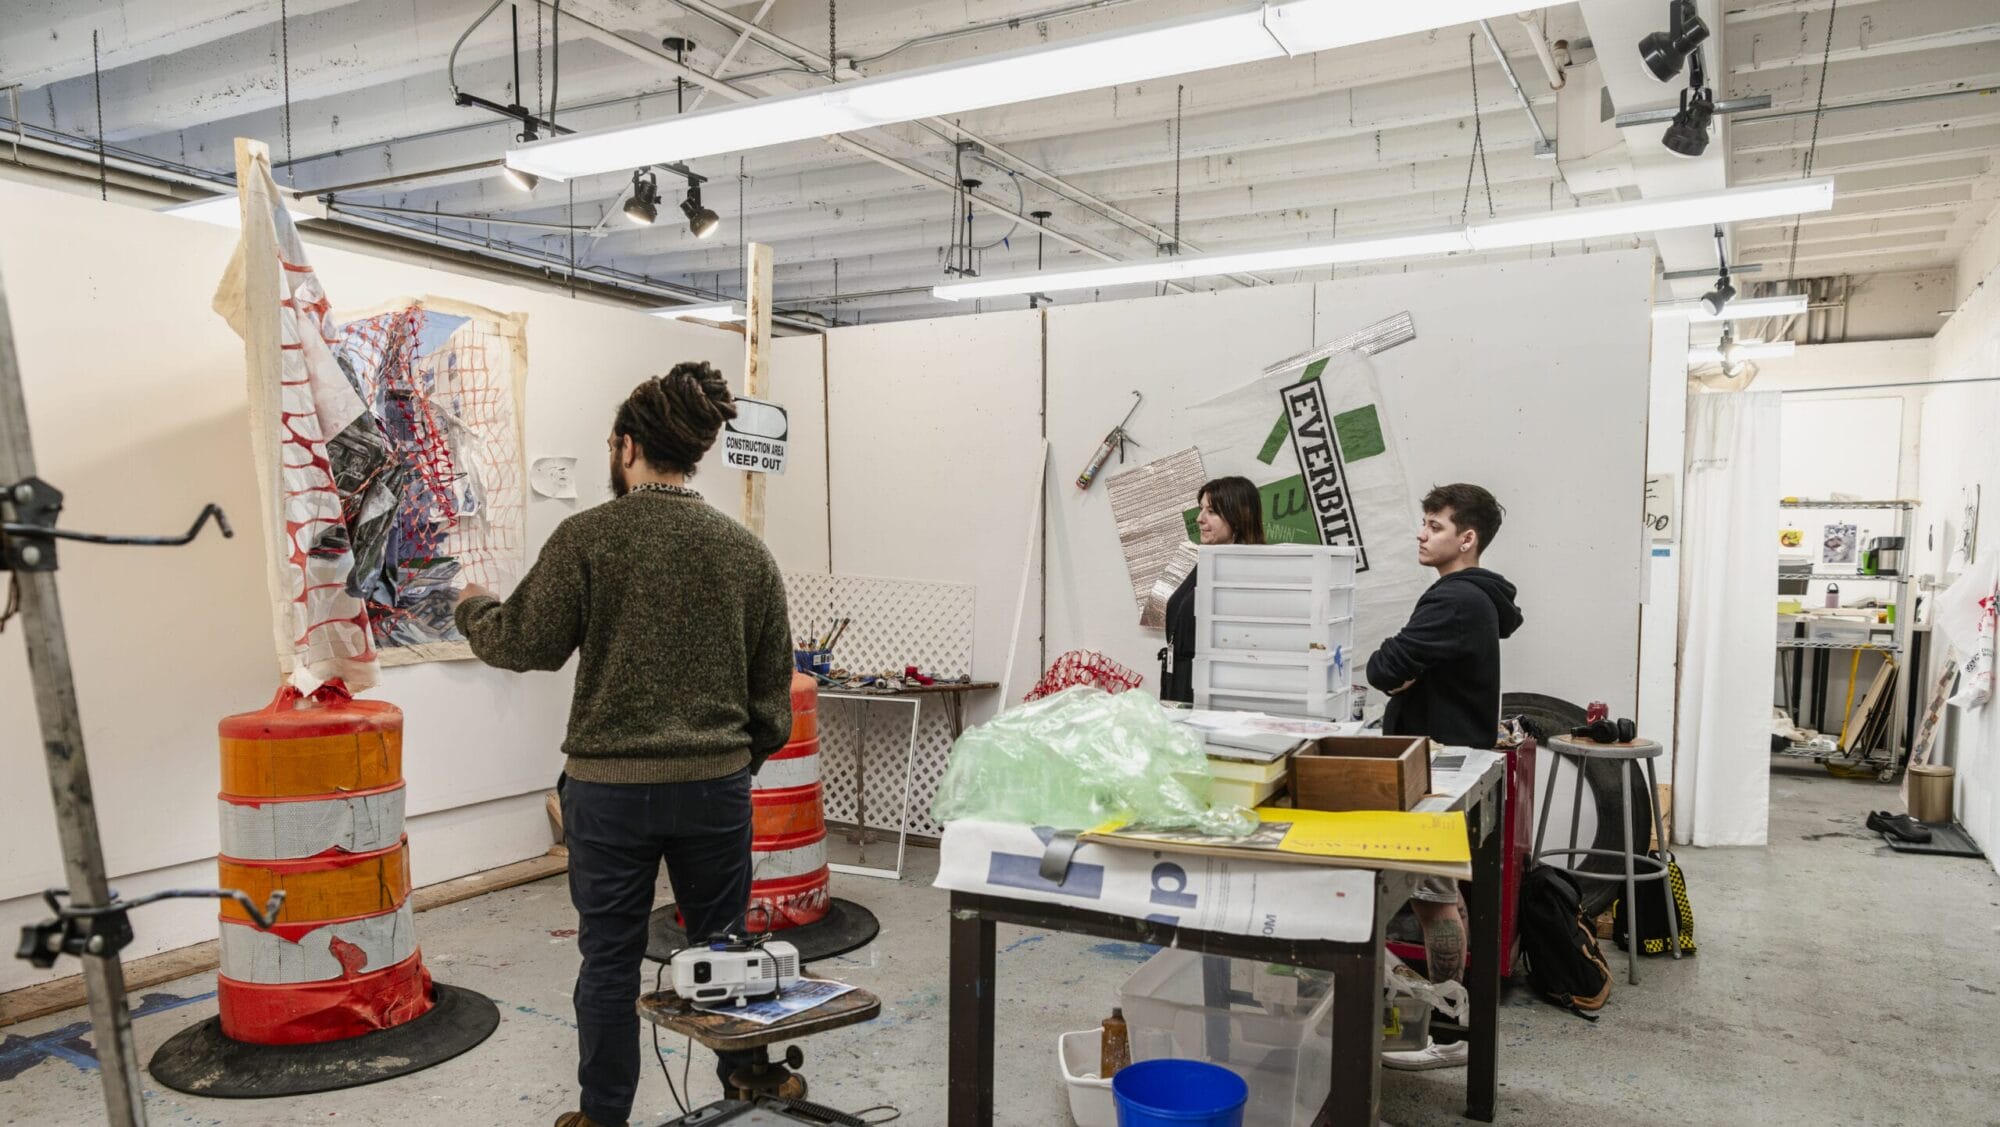 Students convene in a graduate studio space